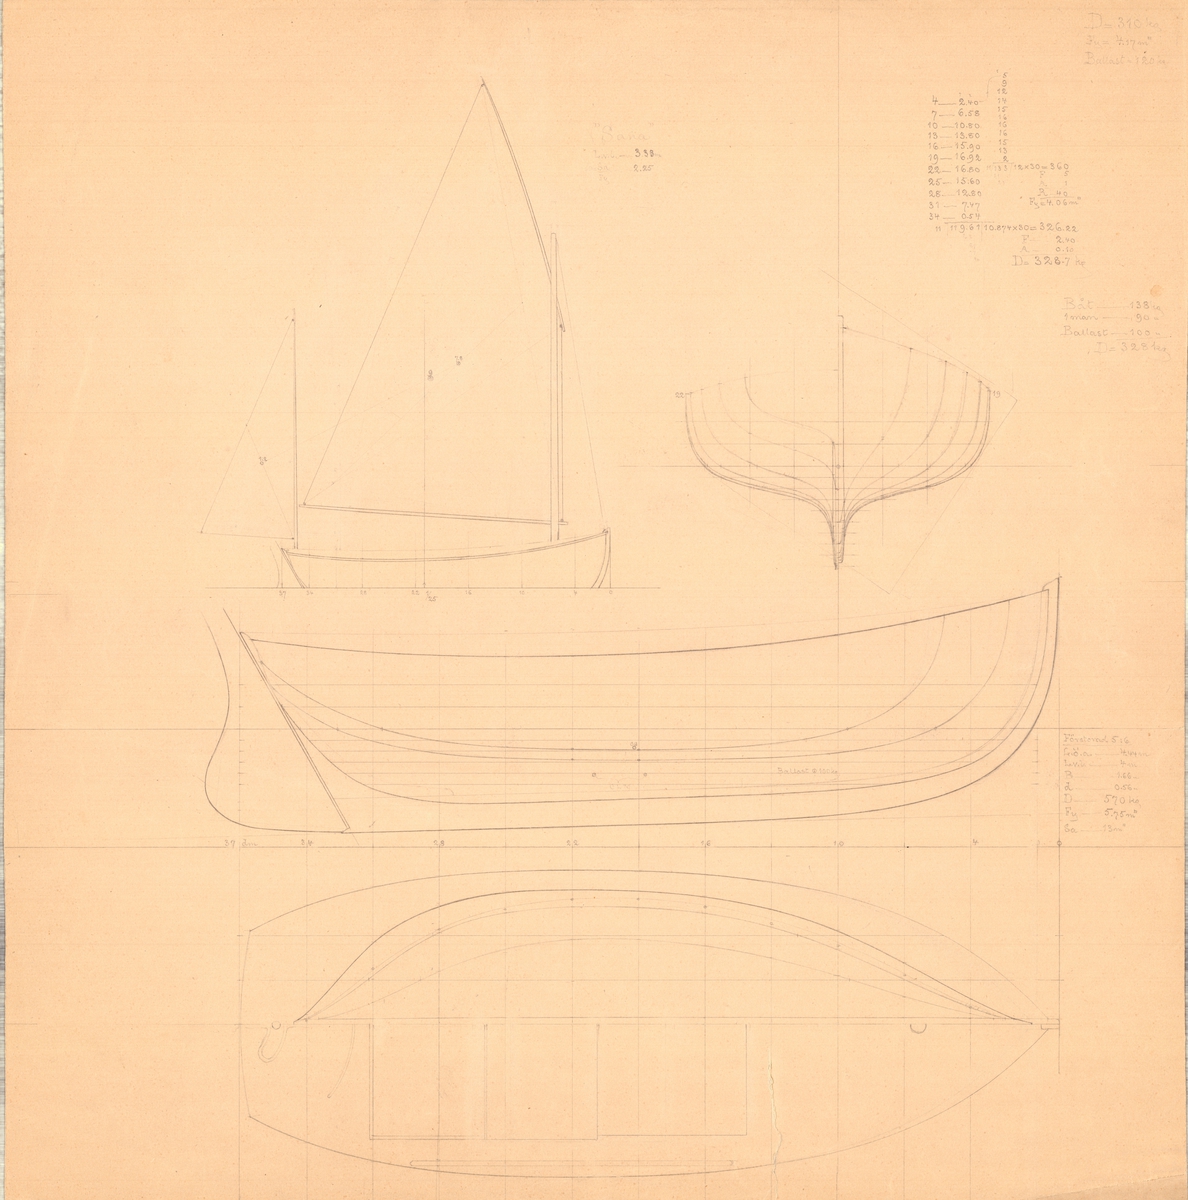 Tvåmastad segelbåt.
spantruta, rigg-, profil och linjeritning